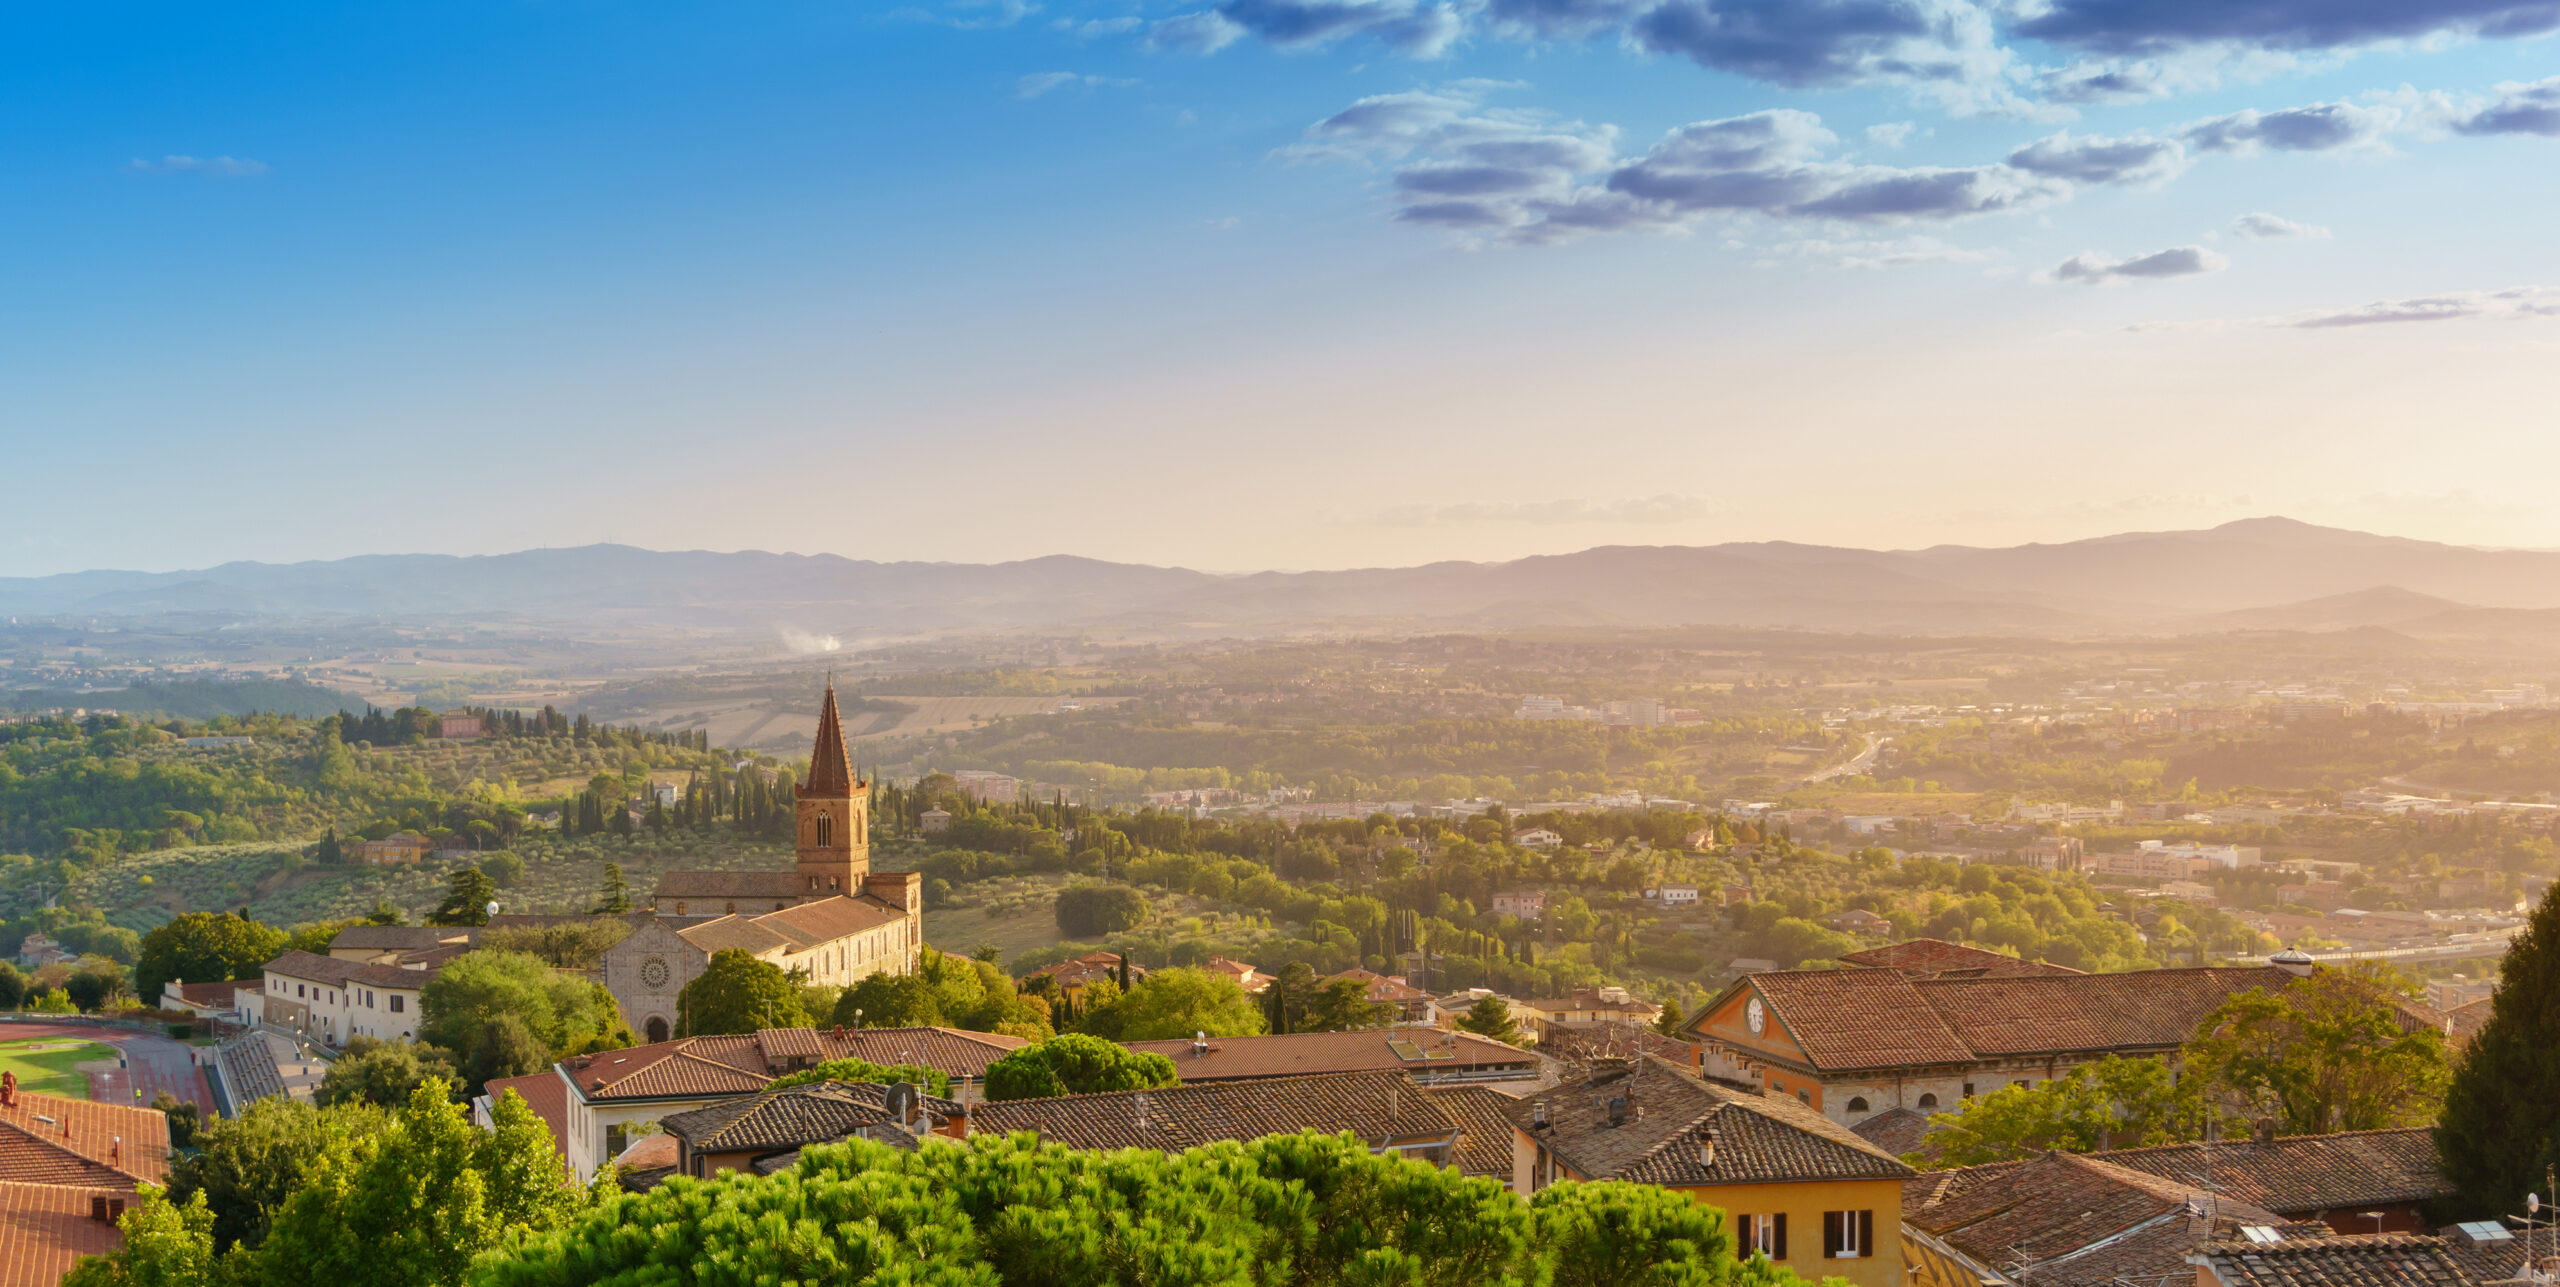 Panoramic view of Perugia, Umbria, Italy